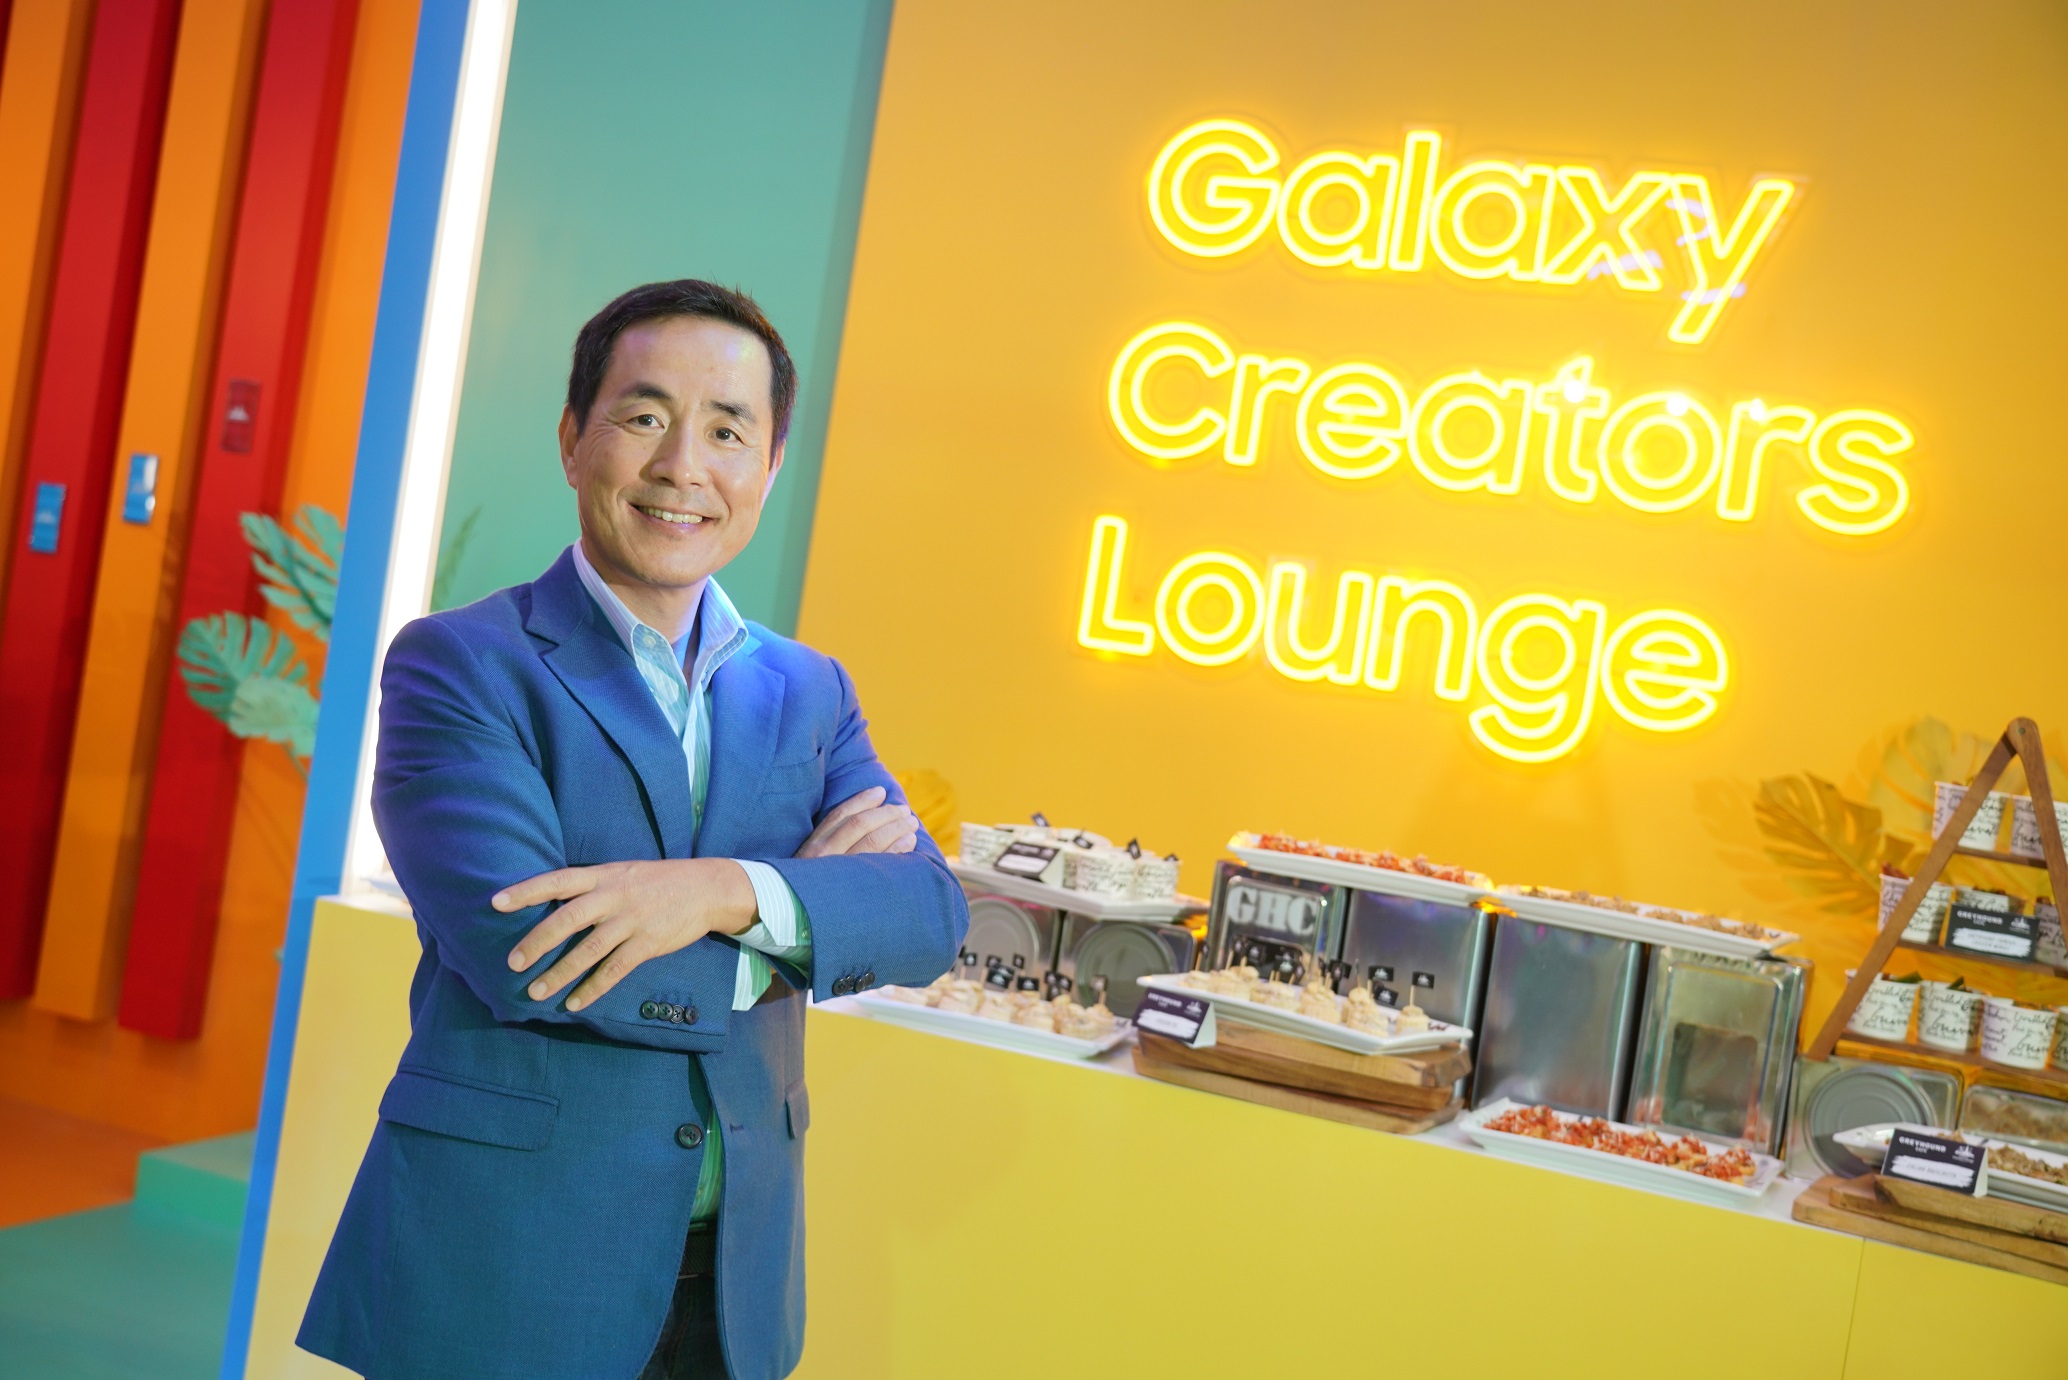 Galaxy Creator Lounge